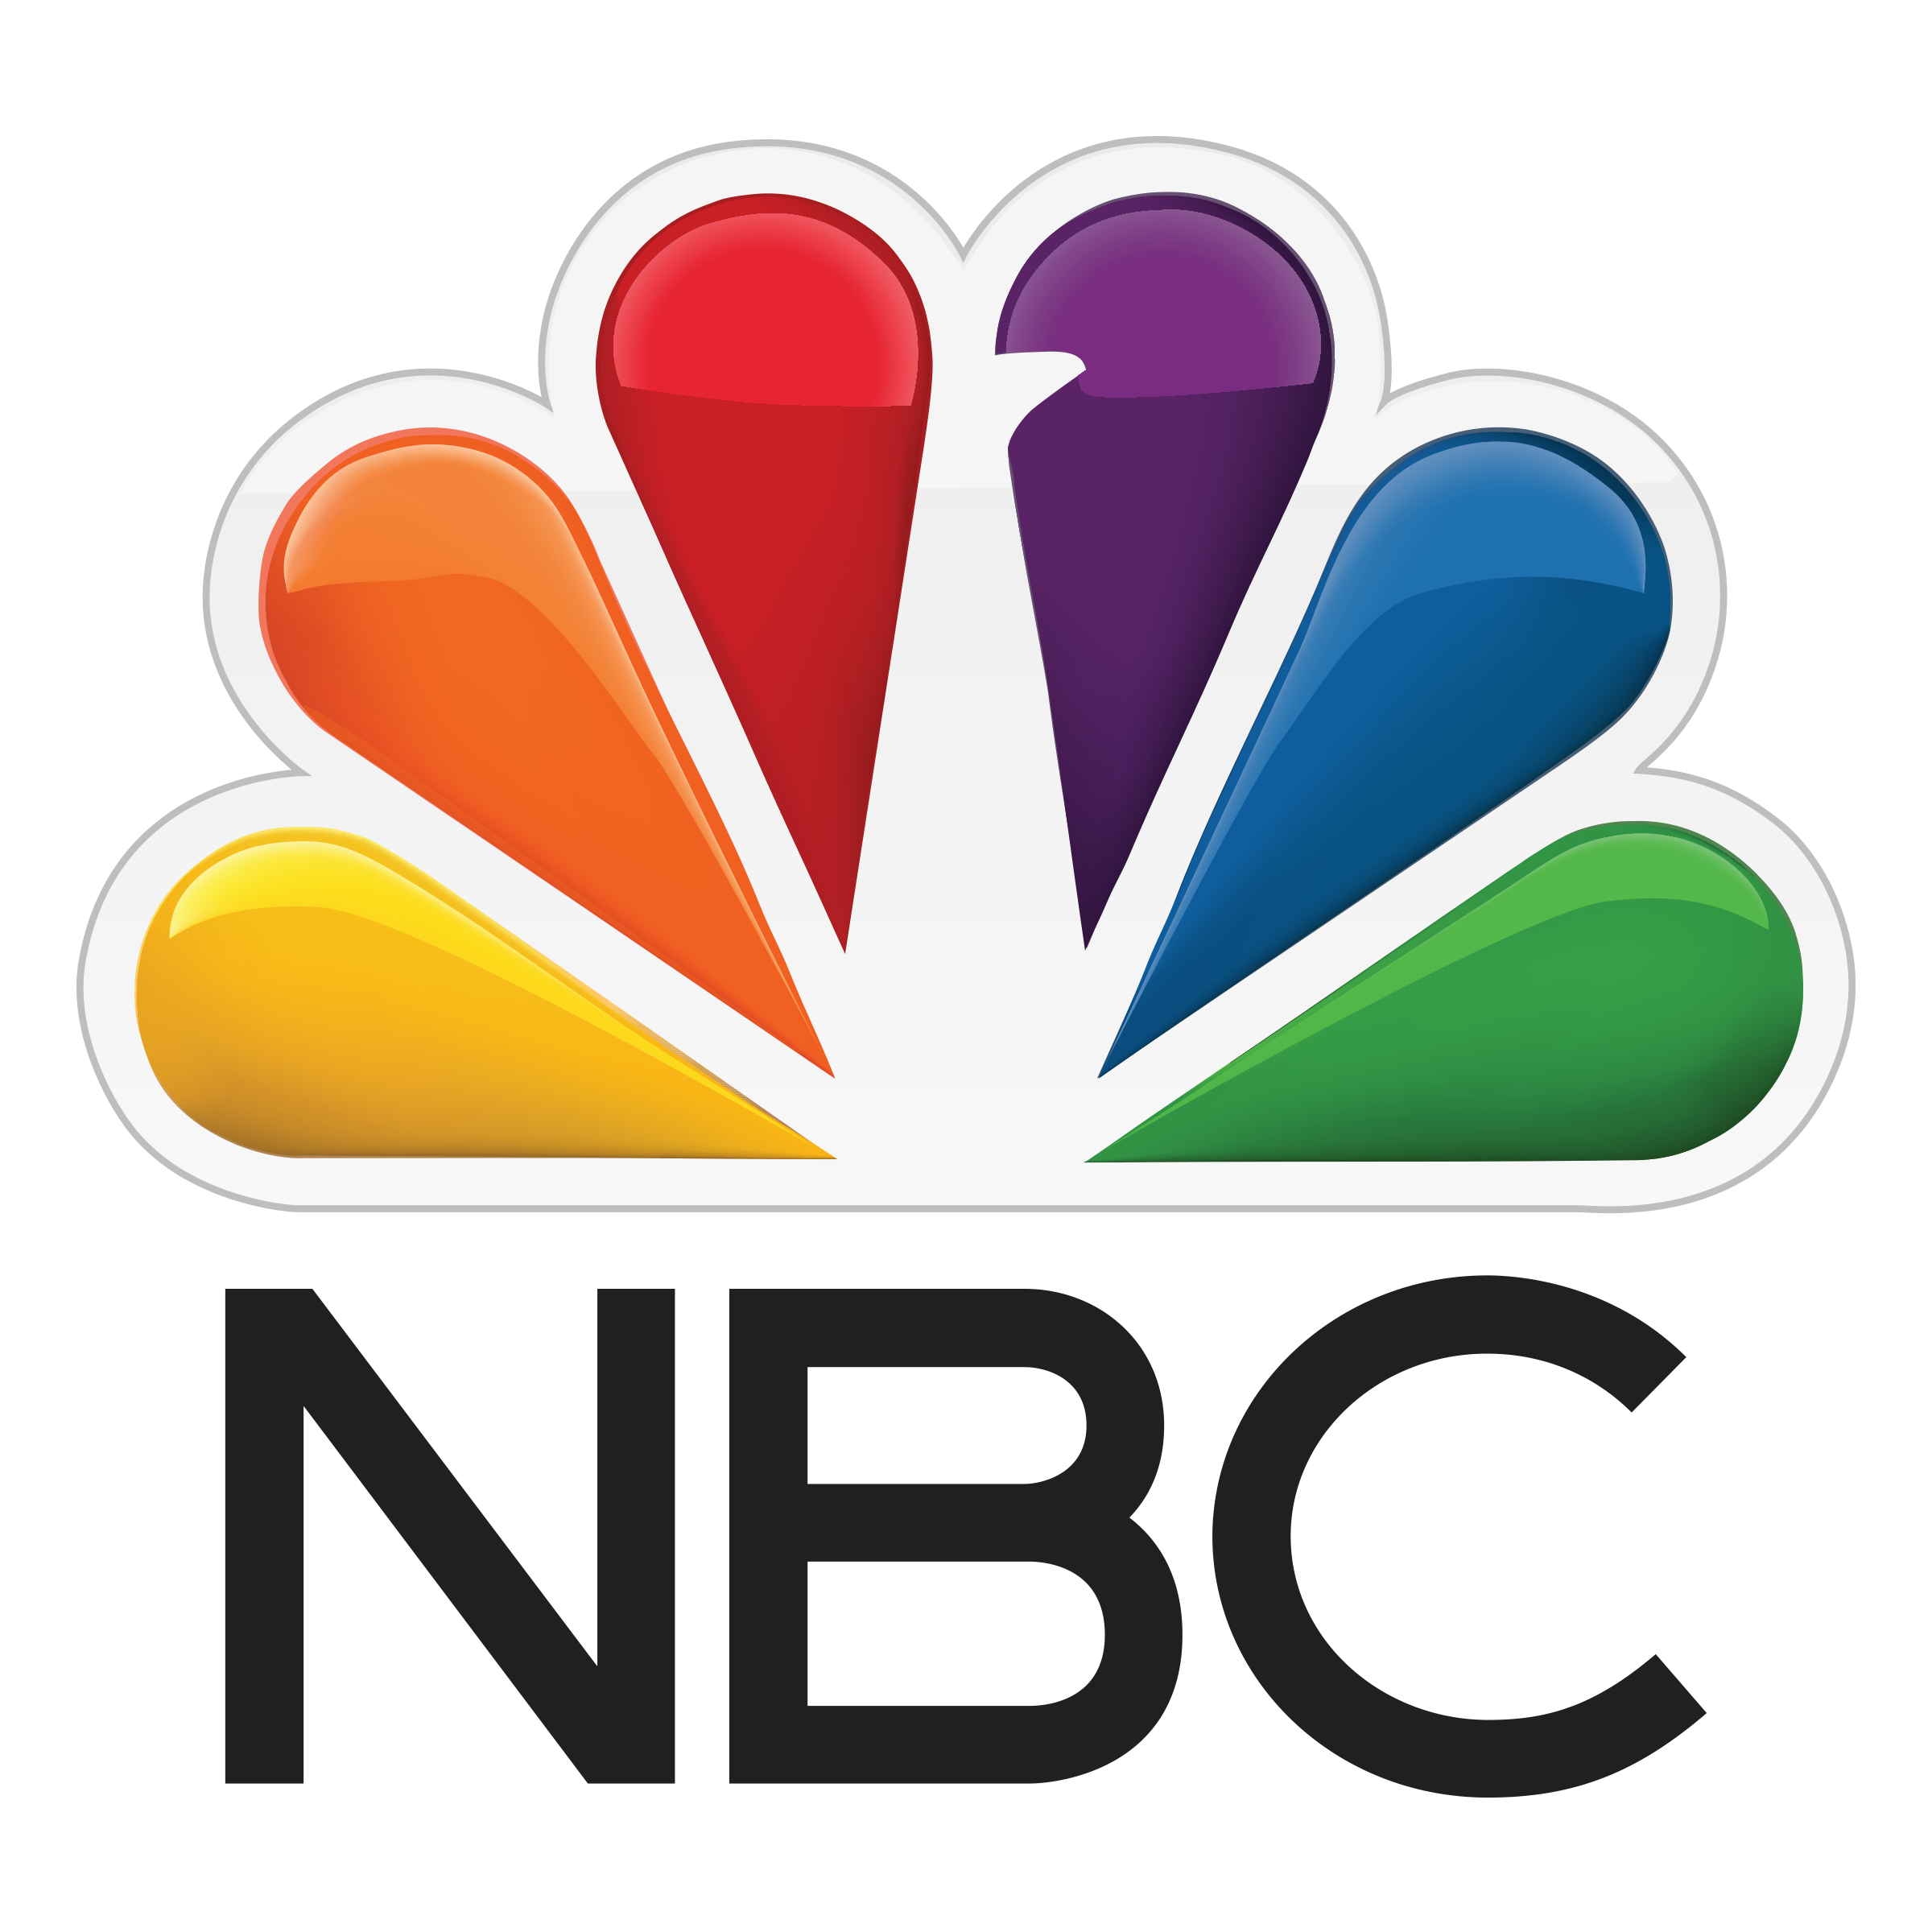 NBC5 Logo